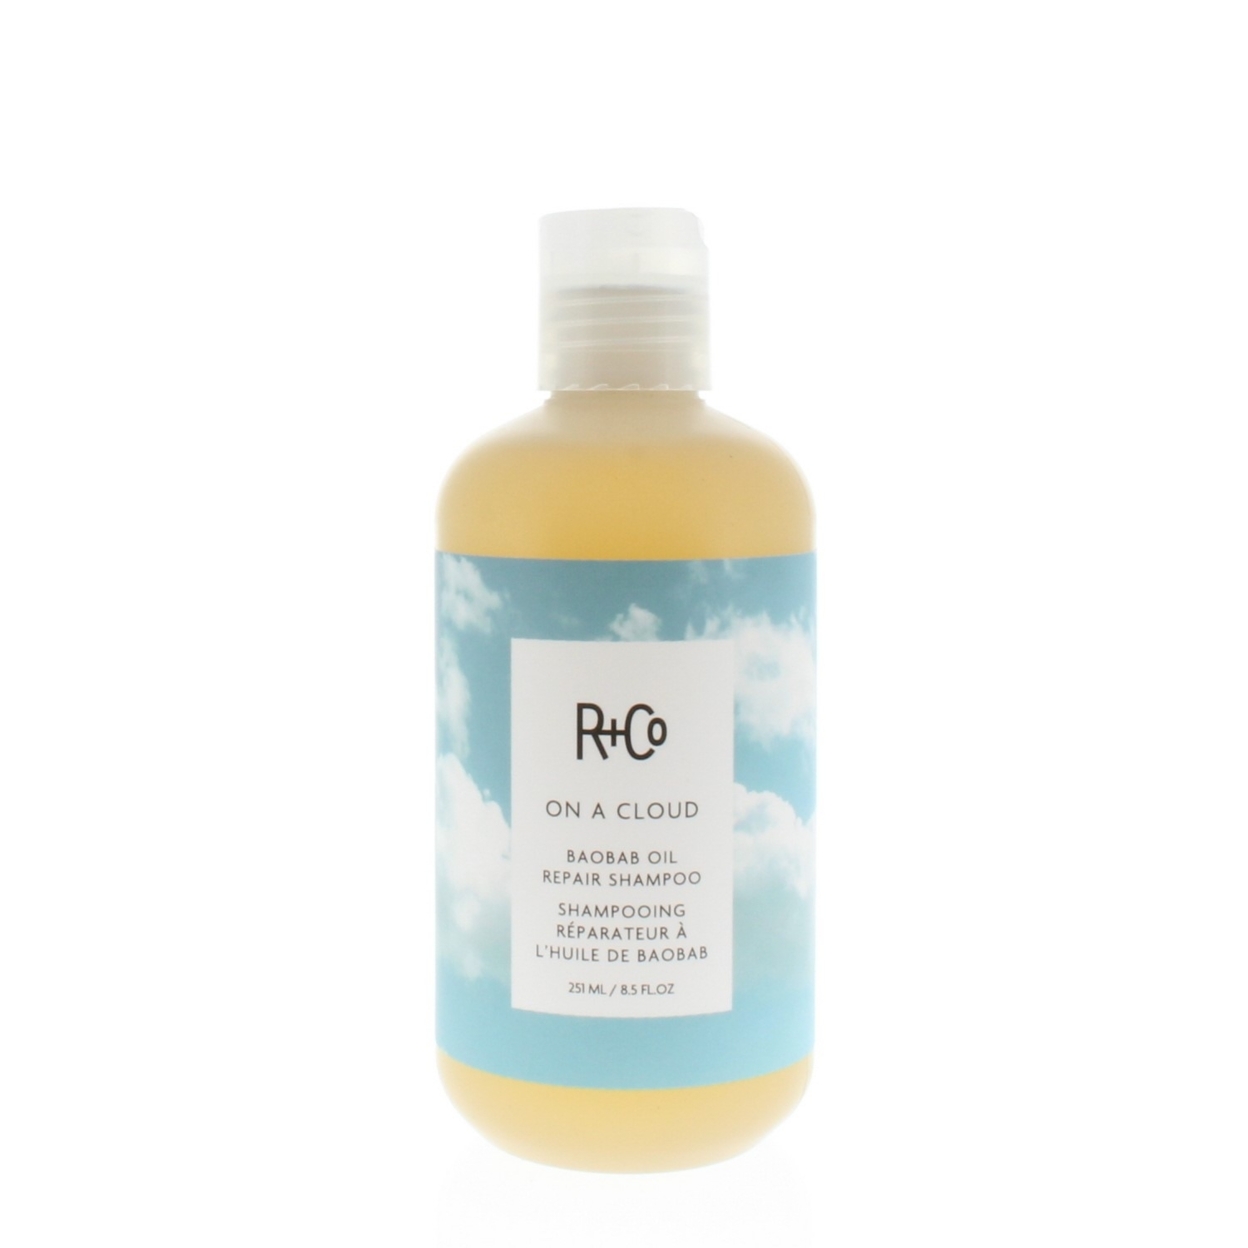 R+Co On A Cloud Baobab Oil Repair Shampoo 8.5oz/251ml